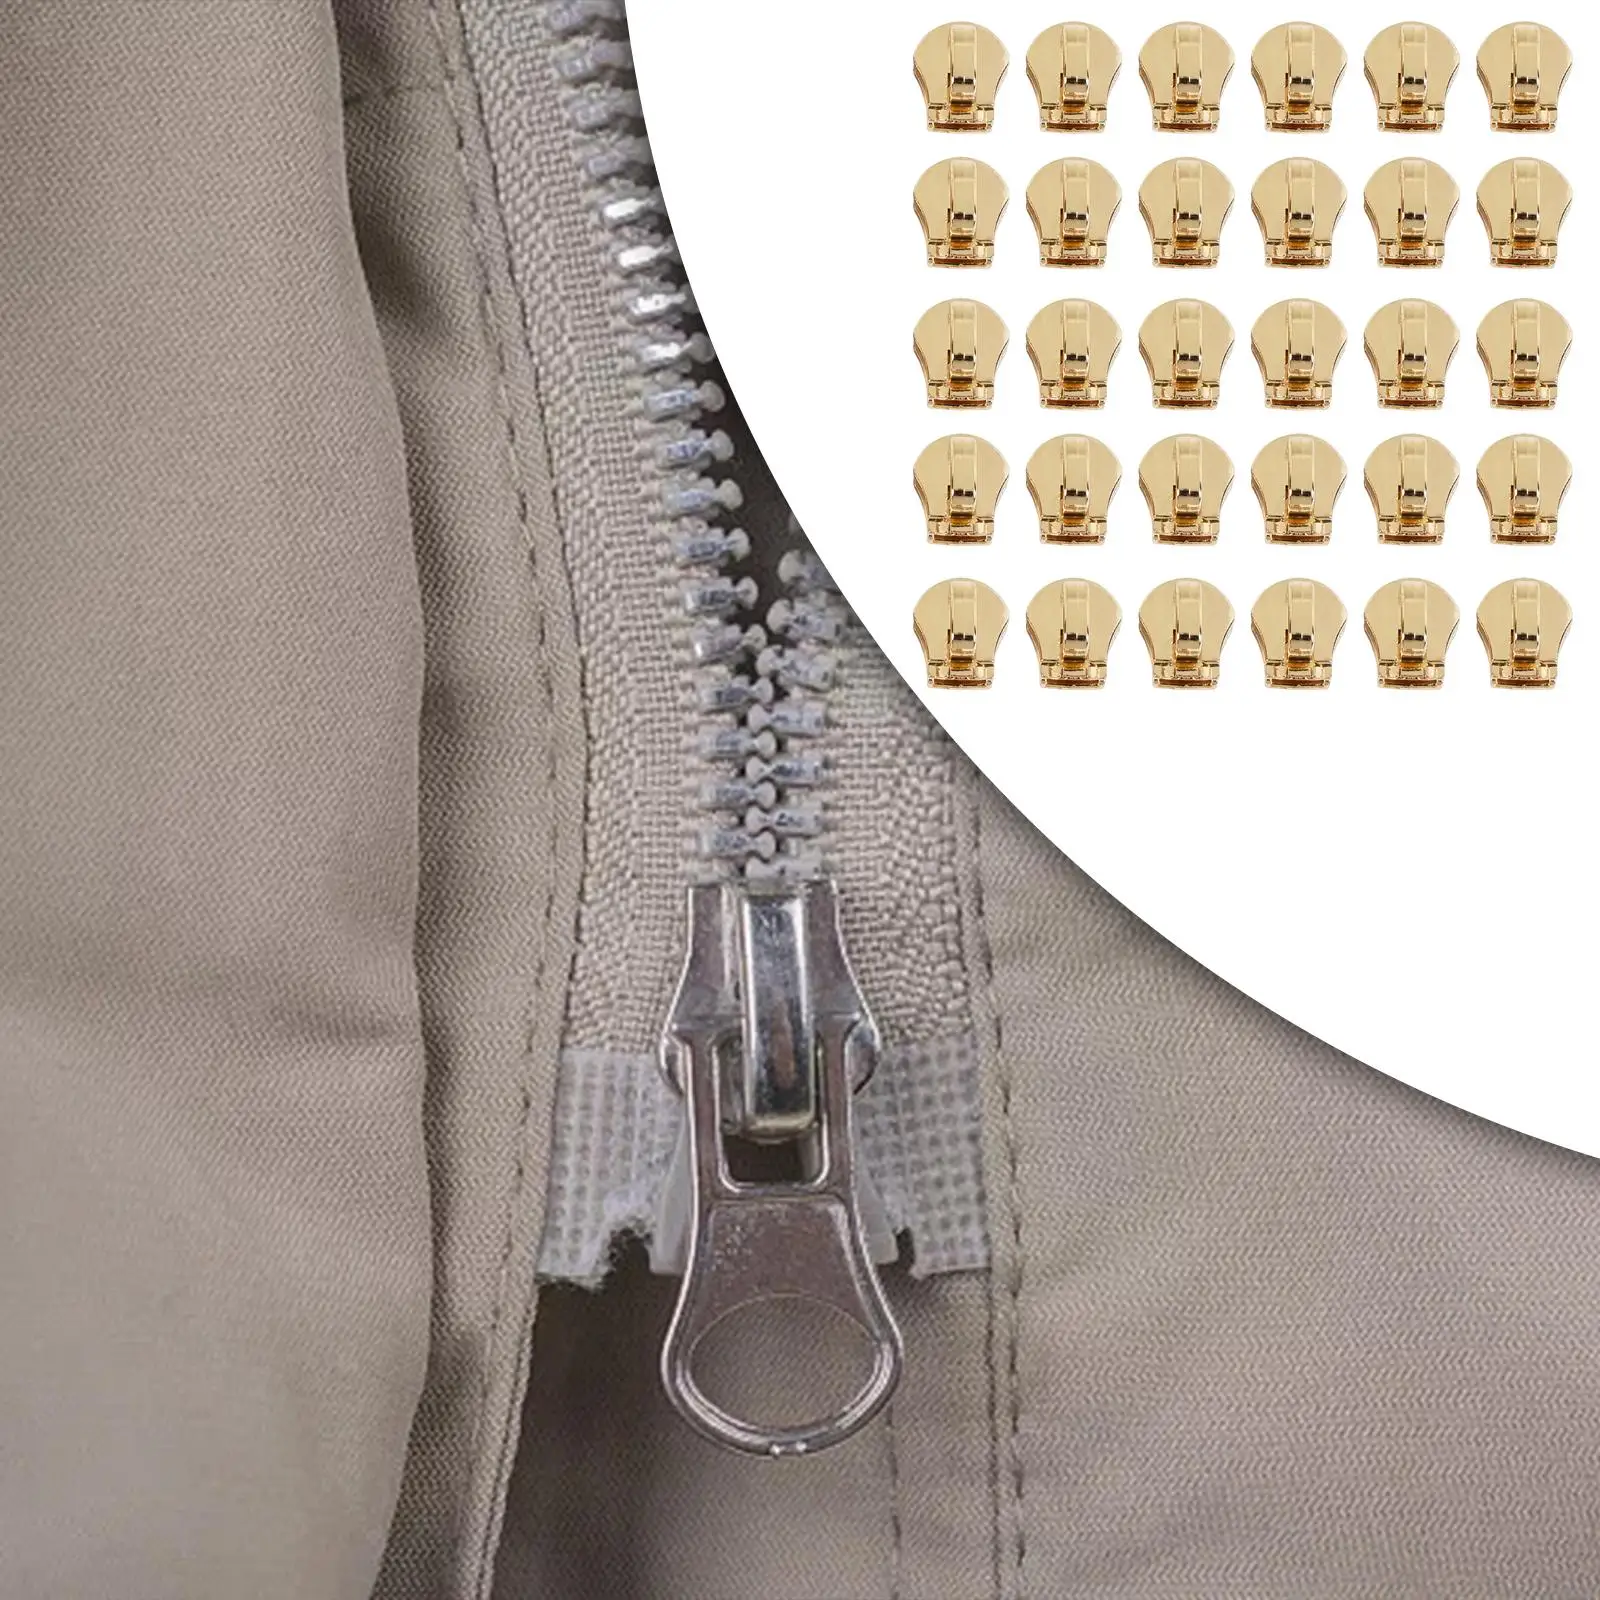 30 Pieces Zipper Sliders Only Zip Pulls Not Included Metal Zipper Head #5